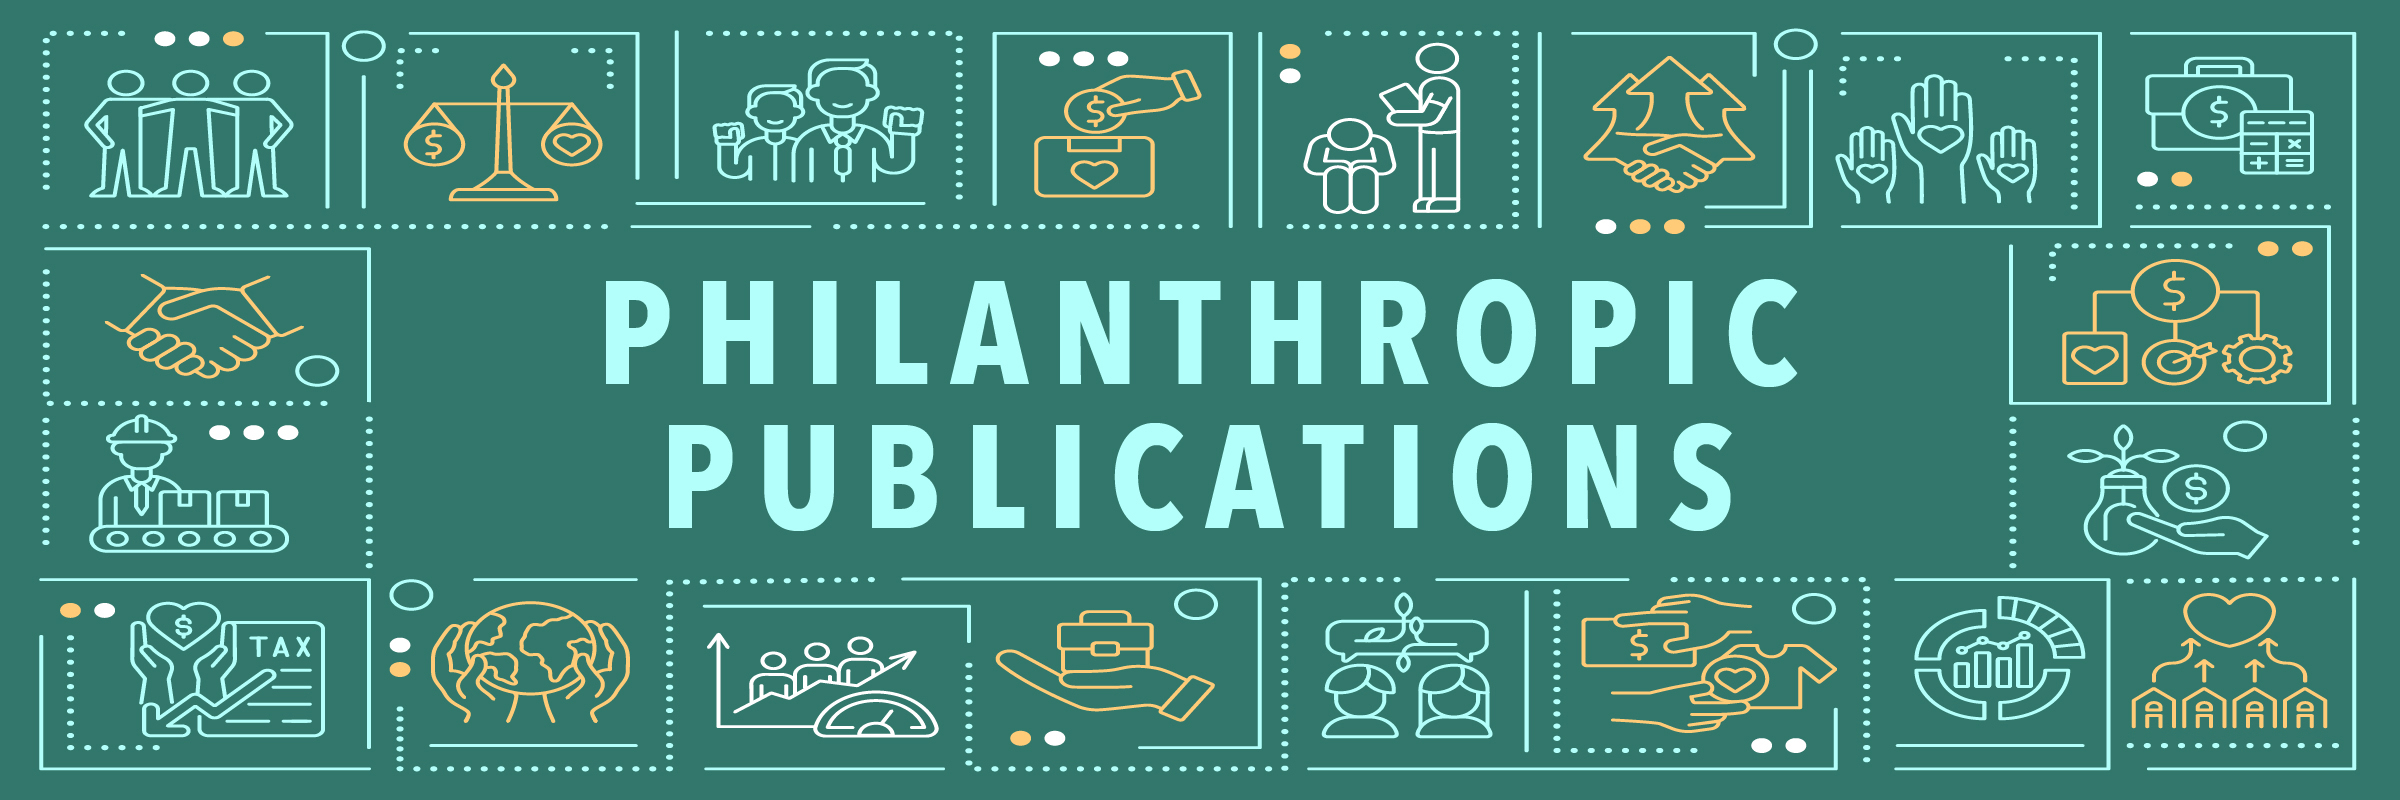 Philanthropic publications banner